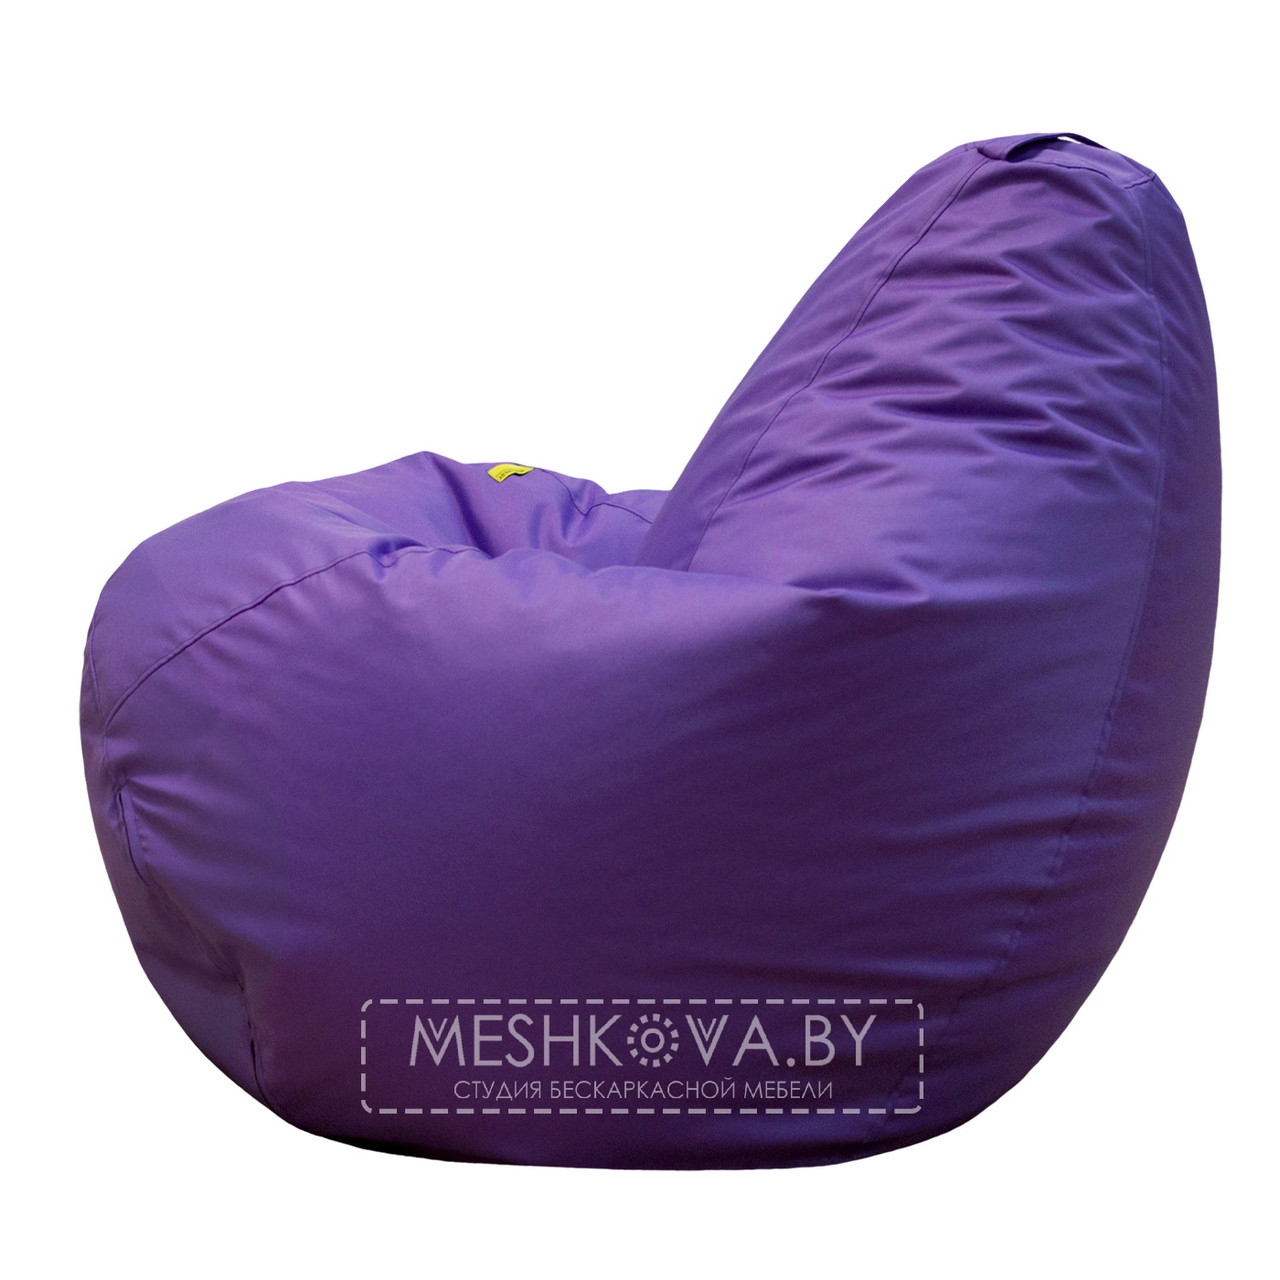 Кресло-груша Стронг Фиолетовая - M, фото 1